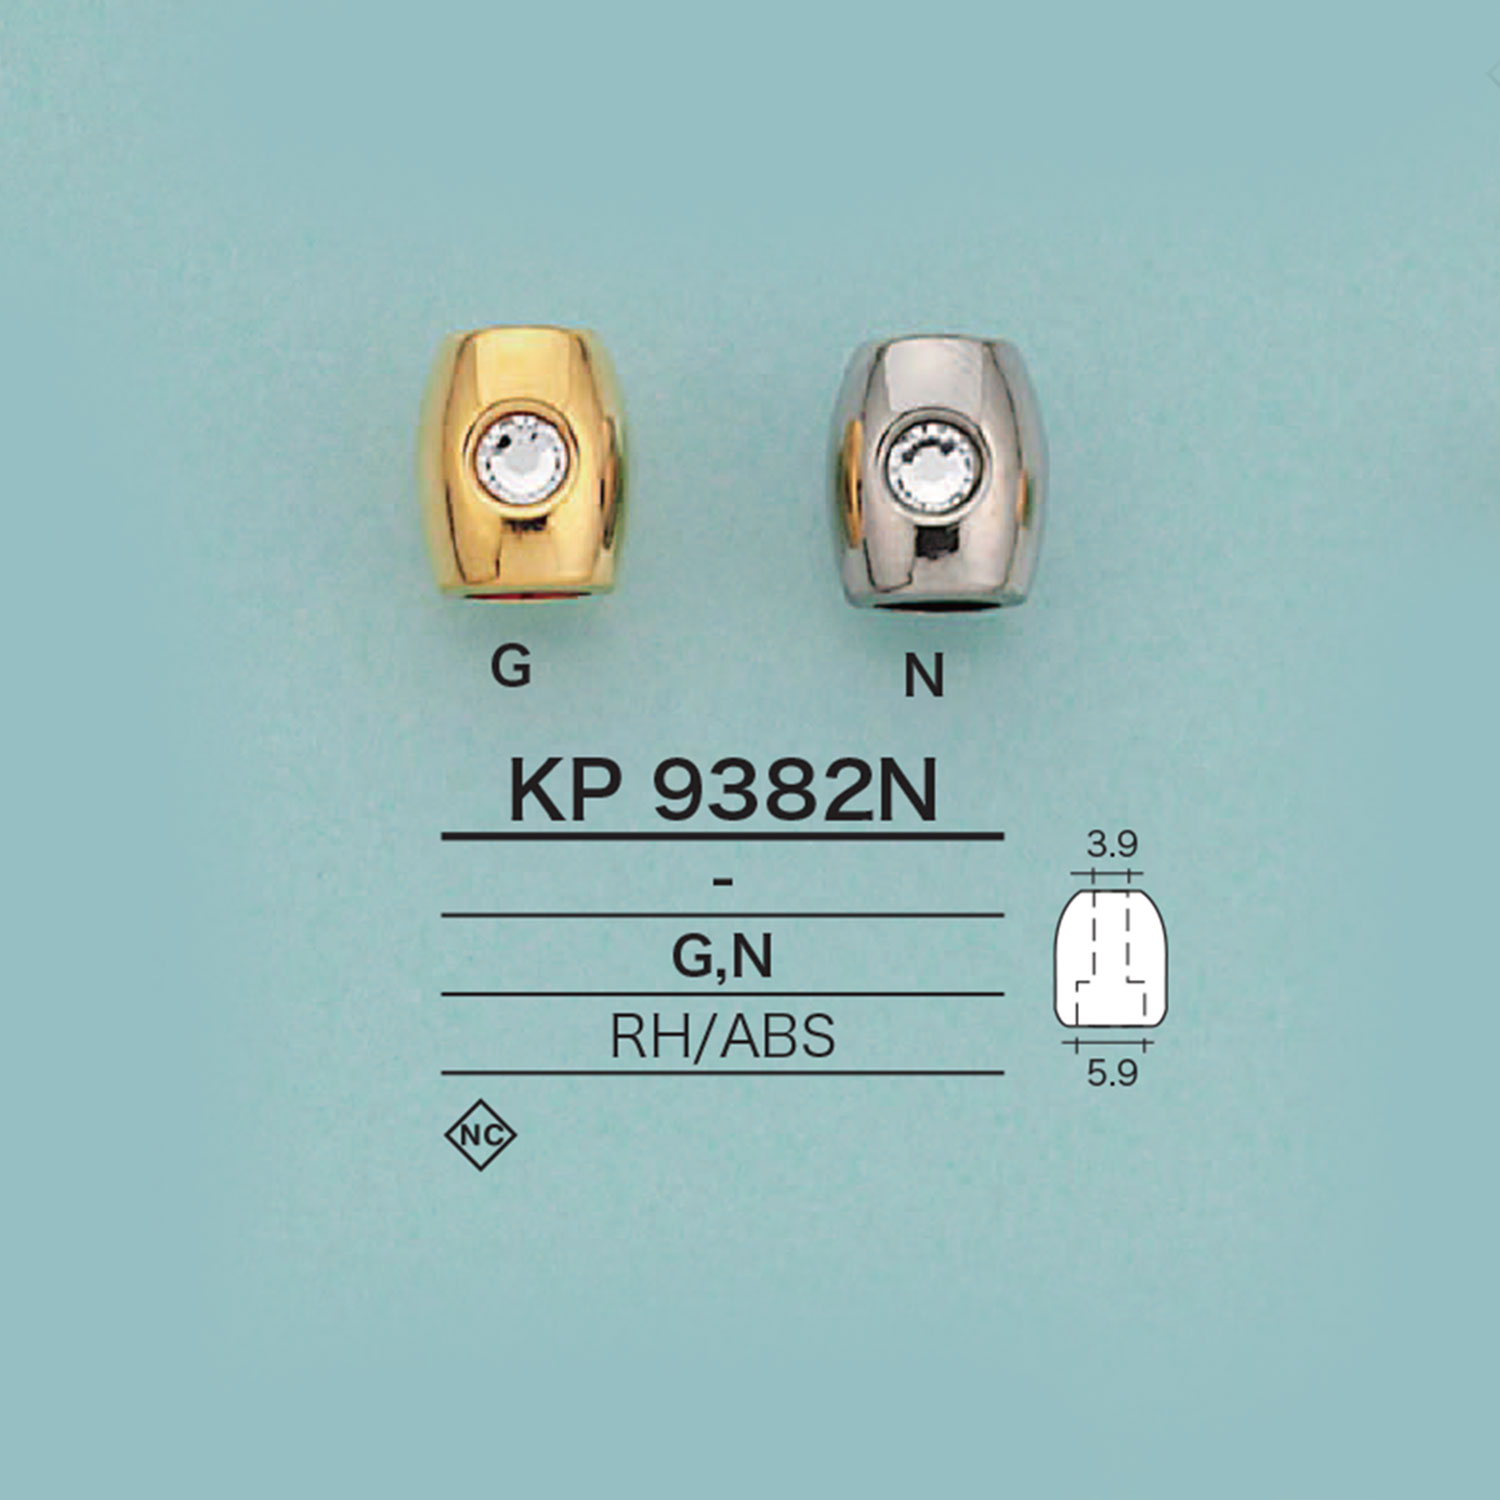 KP9382N ラインストーン付きコードエンド(メッキ加工)[バックル・カン類] アイリス